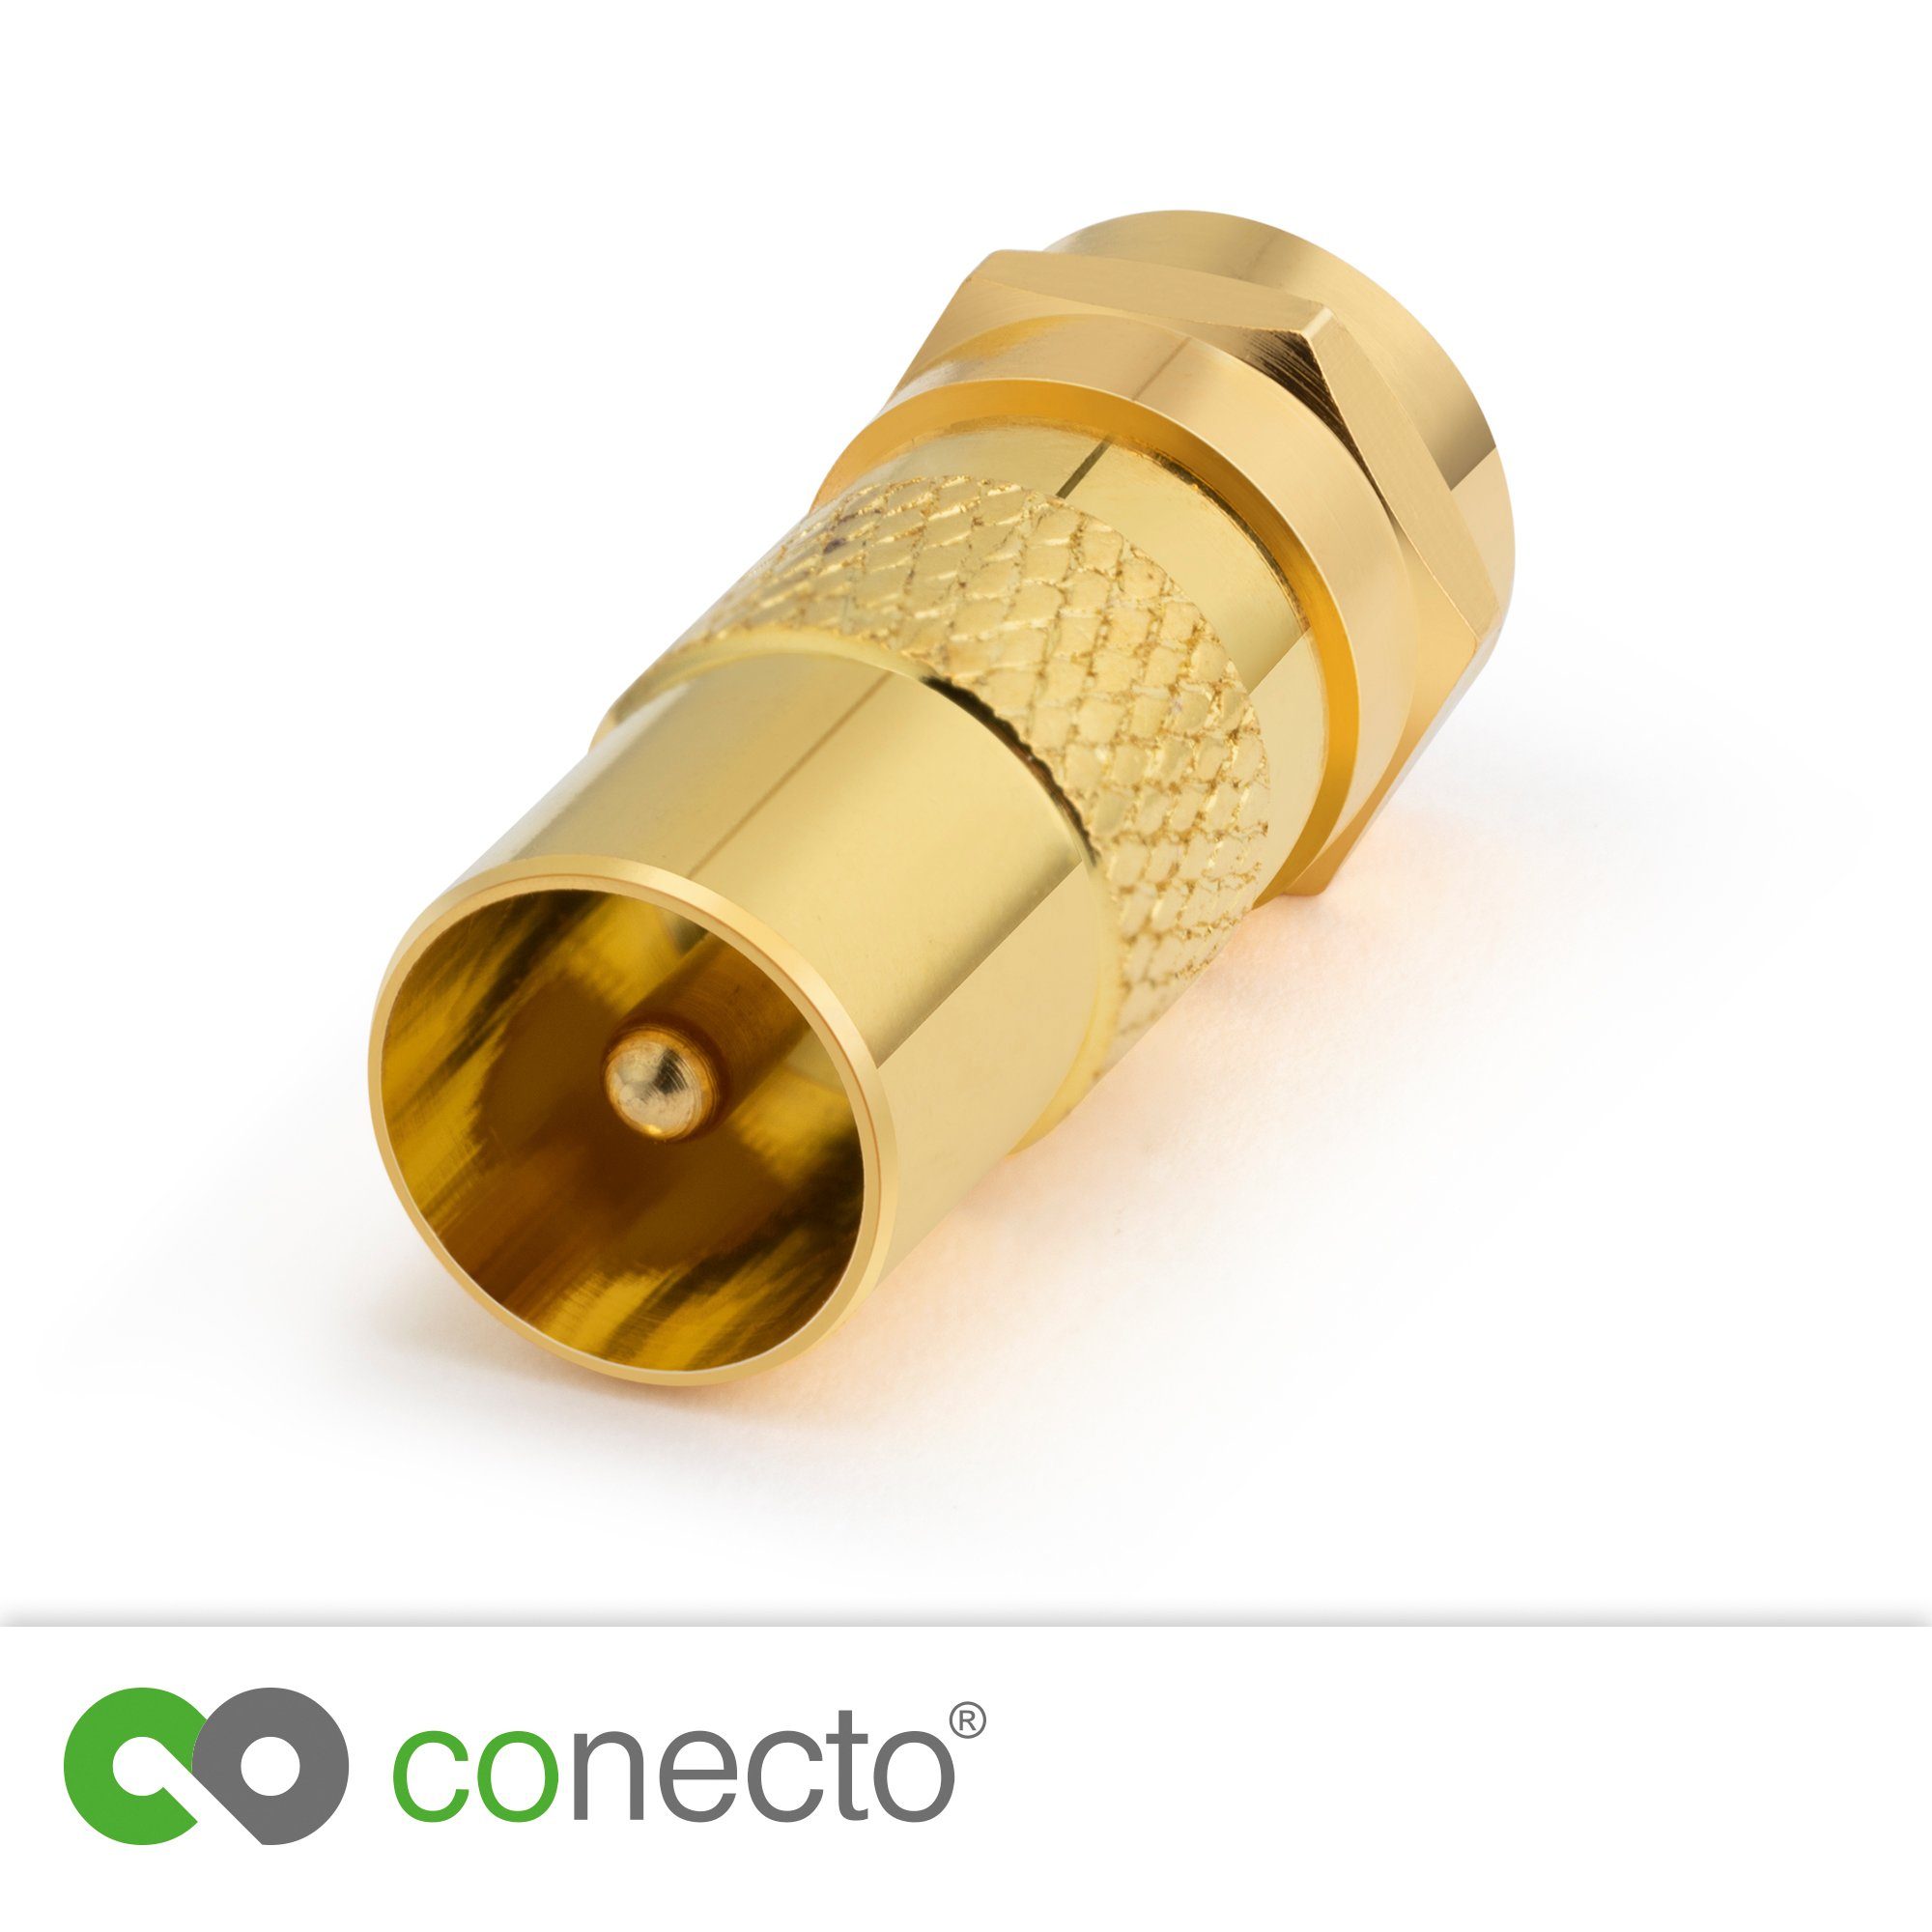 conecto conecto Antennen-Adapter, F-Stecker IEC-Buchse, SAT-Kabel Adapter zum Verbin auf